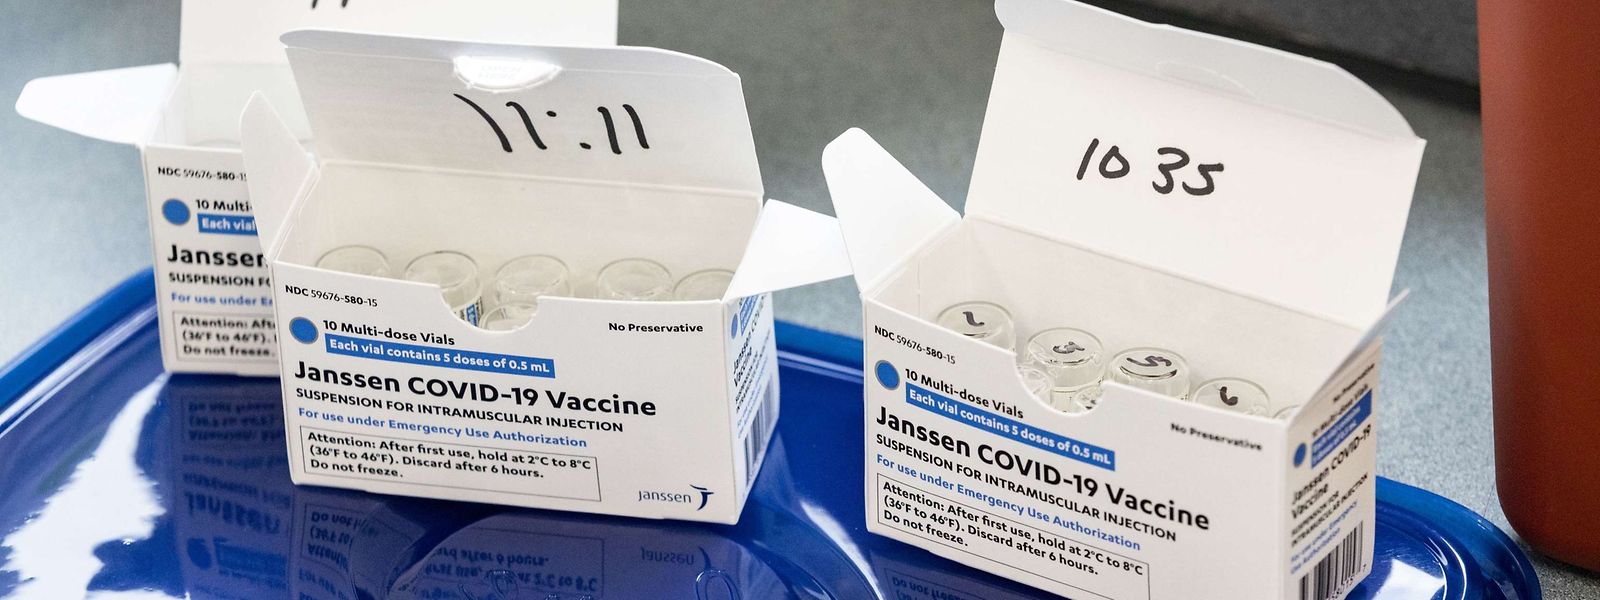 Pour l'heure, le Luxembourg n'a pas encore autorisé les cabinets médicaux à injecter le nouveau vaccin développé par le laboratoire Janssen.